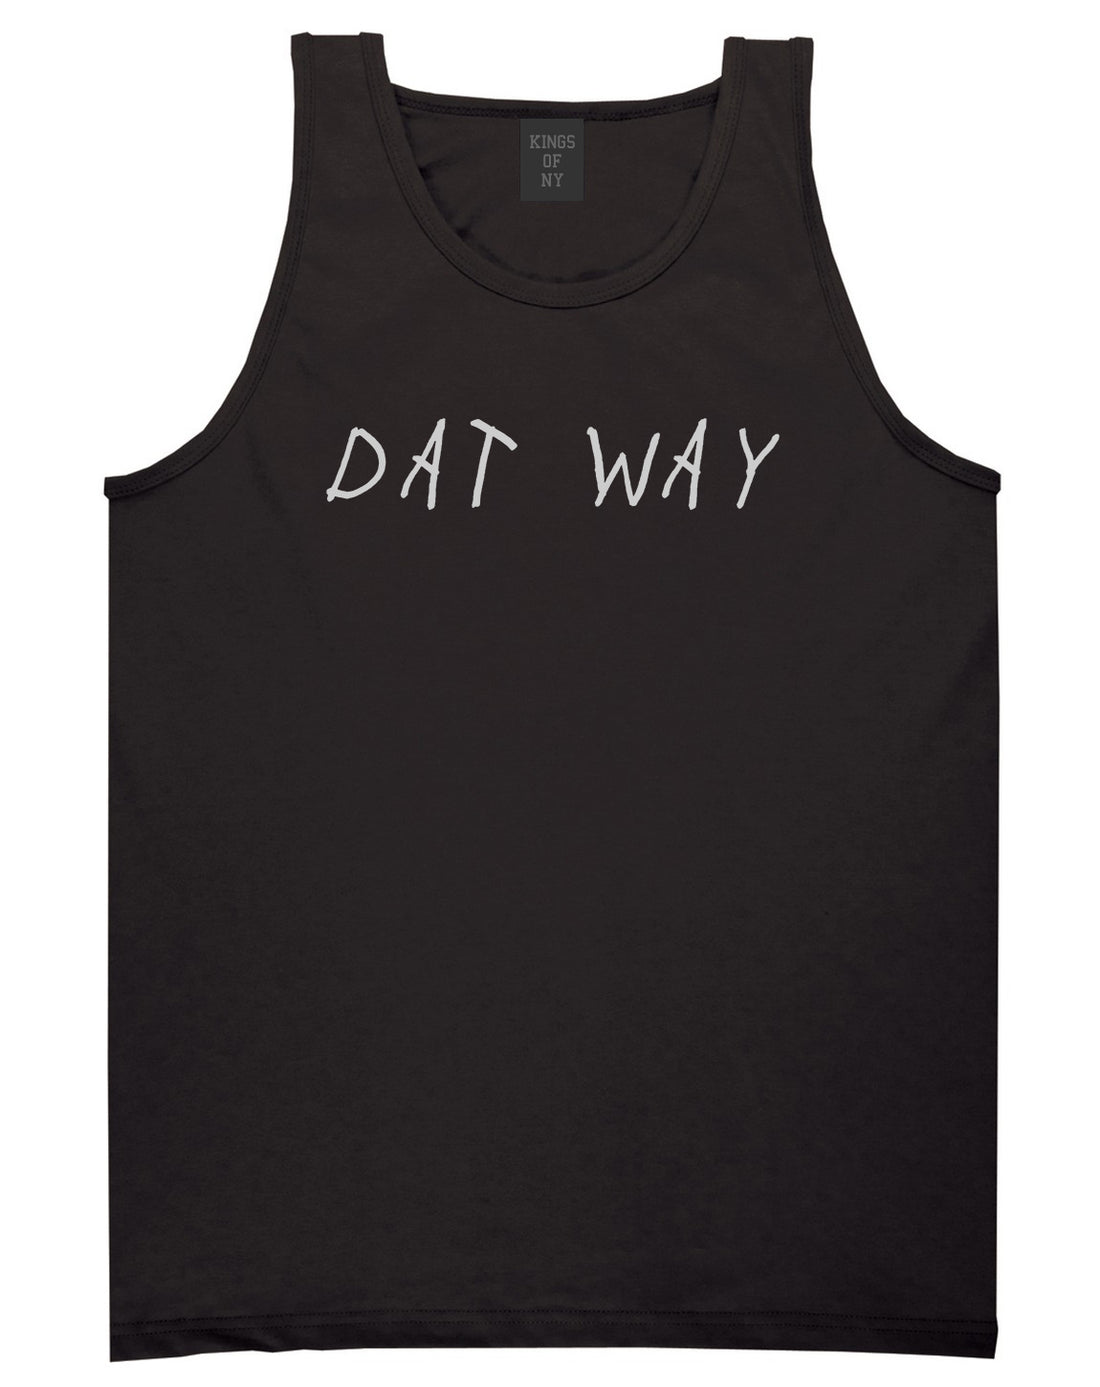 Dat_Way_Font Mens Black Tank Top Shirt by Kings Of NY